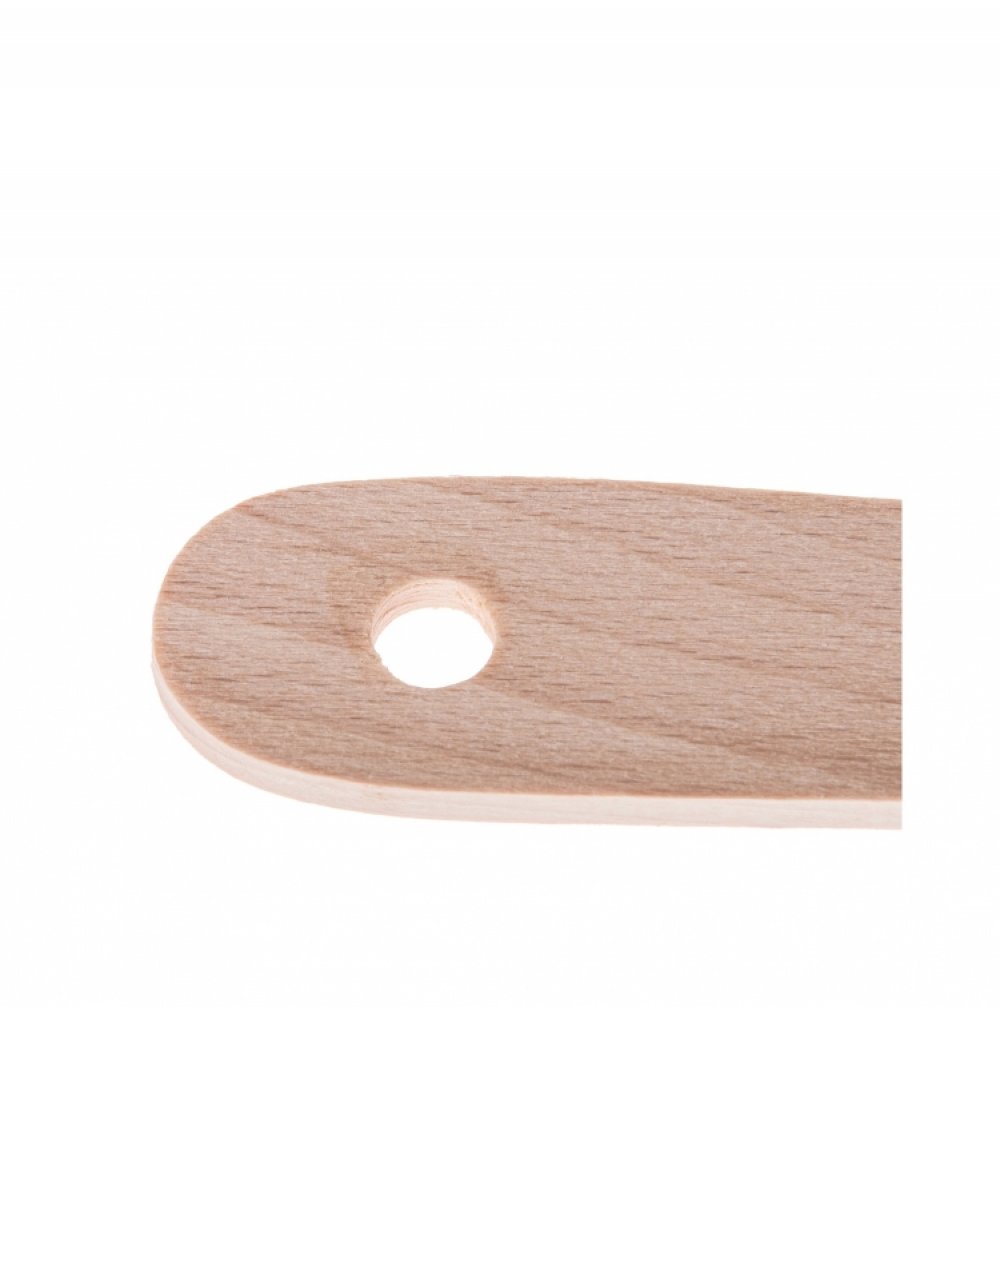 Kuchyňská obracečka z bukového dřeva 30x5,5 cm